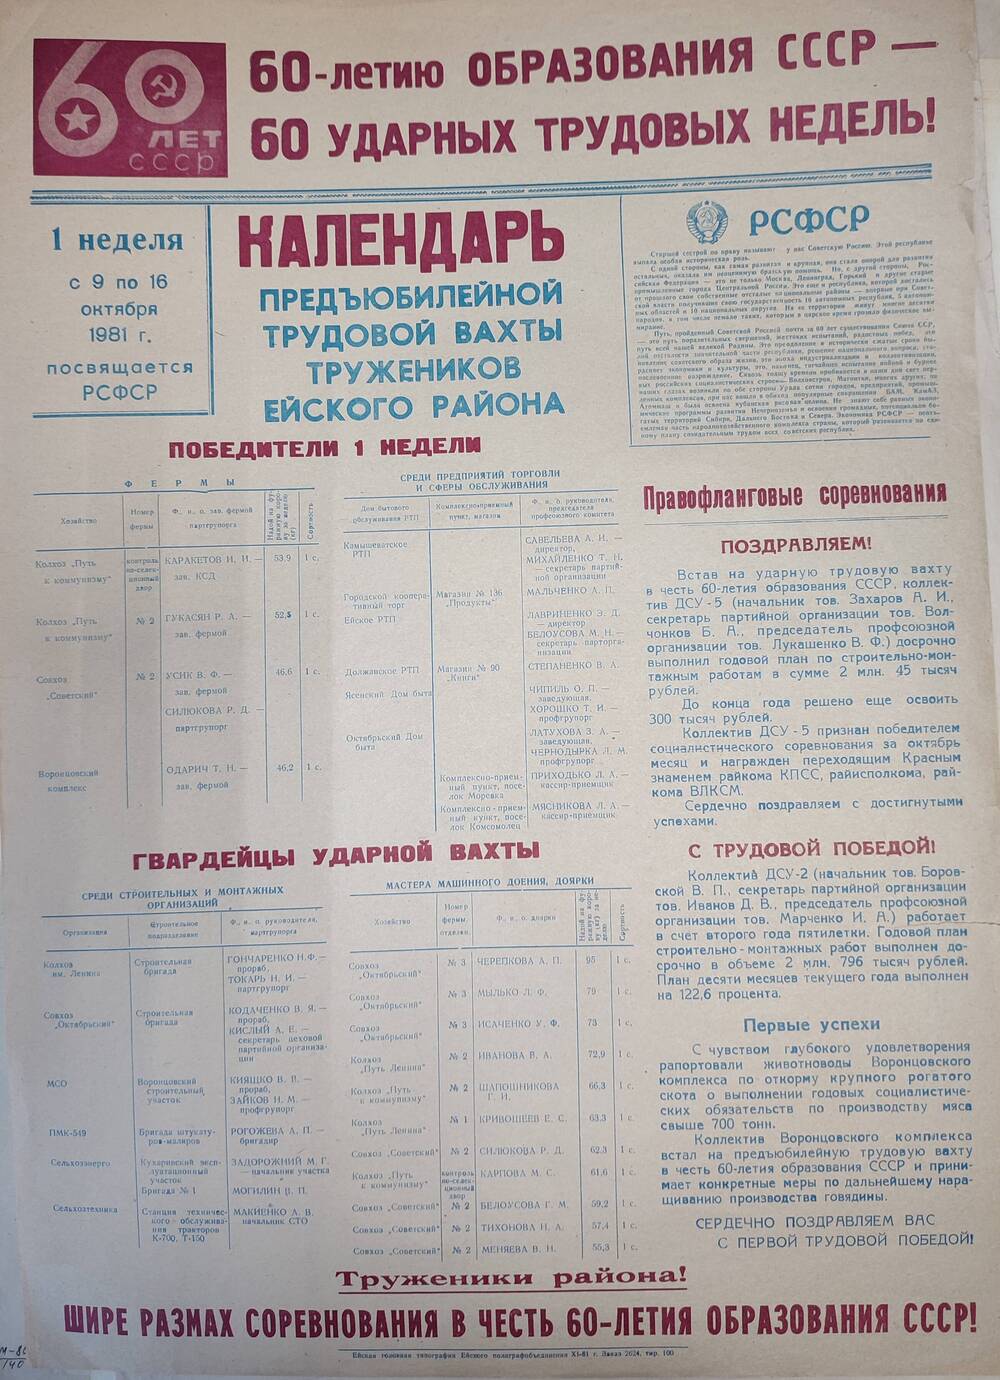 Лист: Календарь предъюбилейной трудовой вахты тружеников Ейского района 1 неделя с 9 по 16 октября 1981 г.